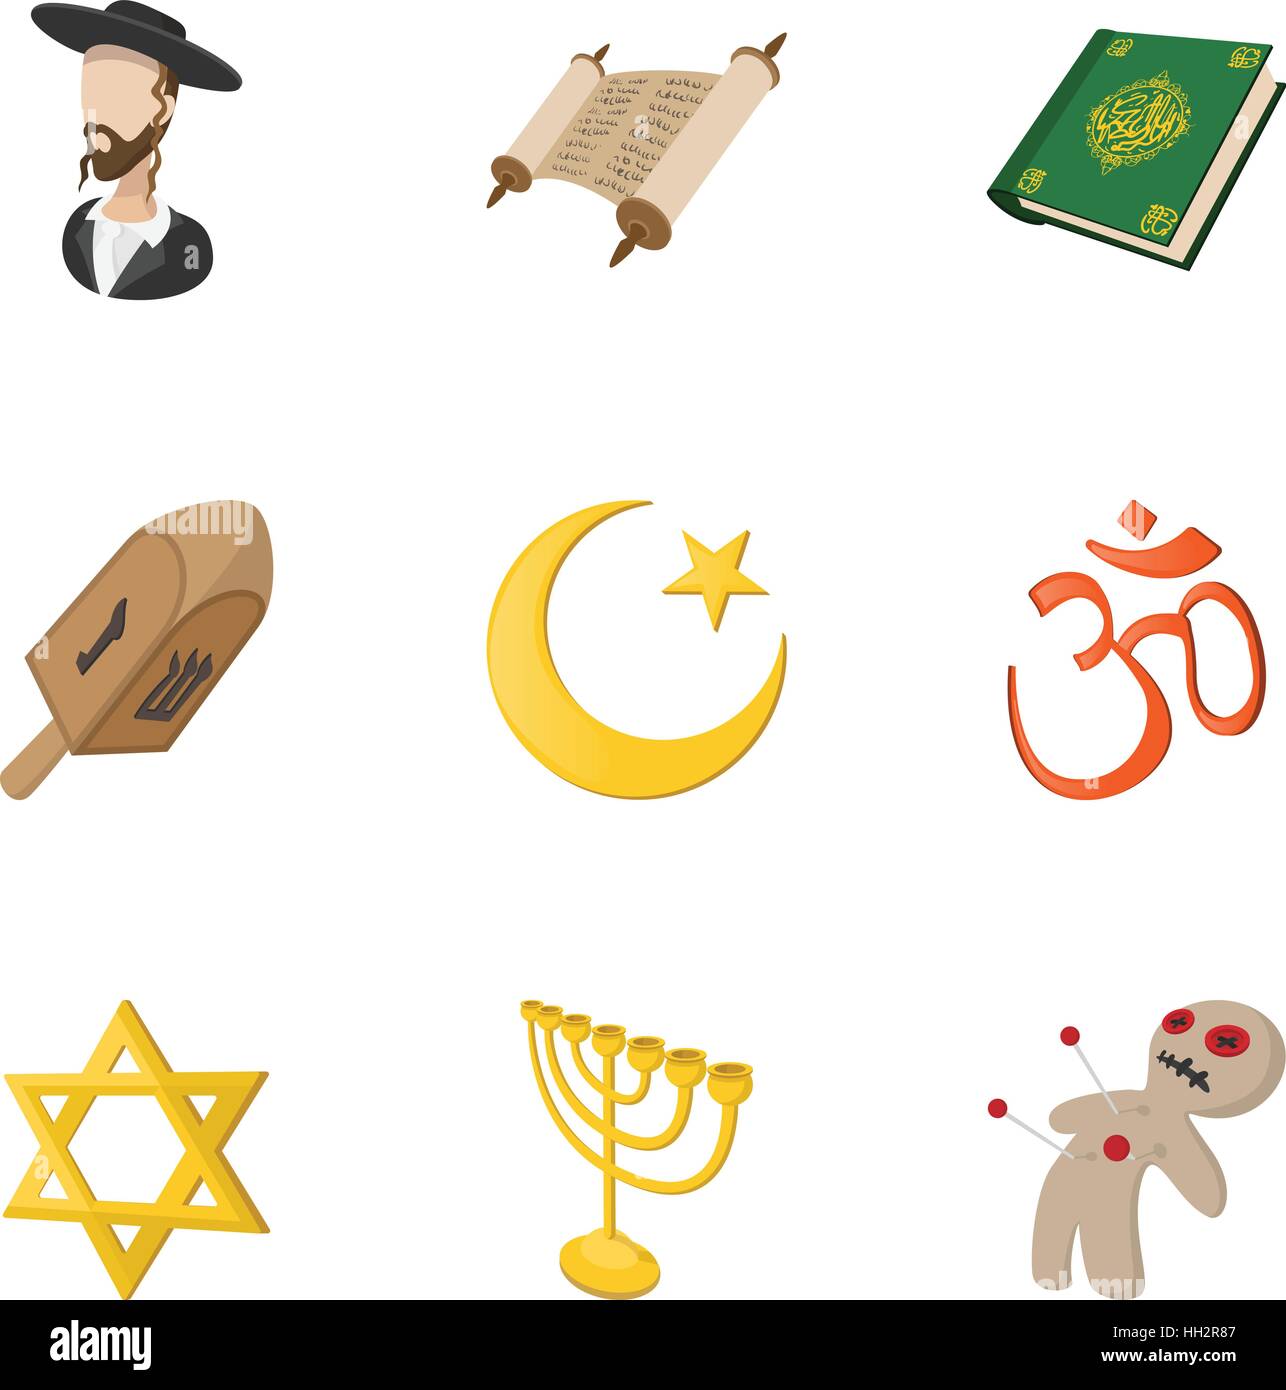 Religious faith icons set, cartoon style Stock Vector